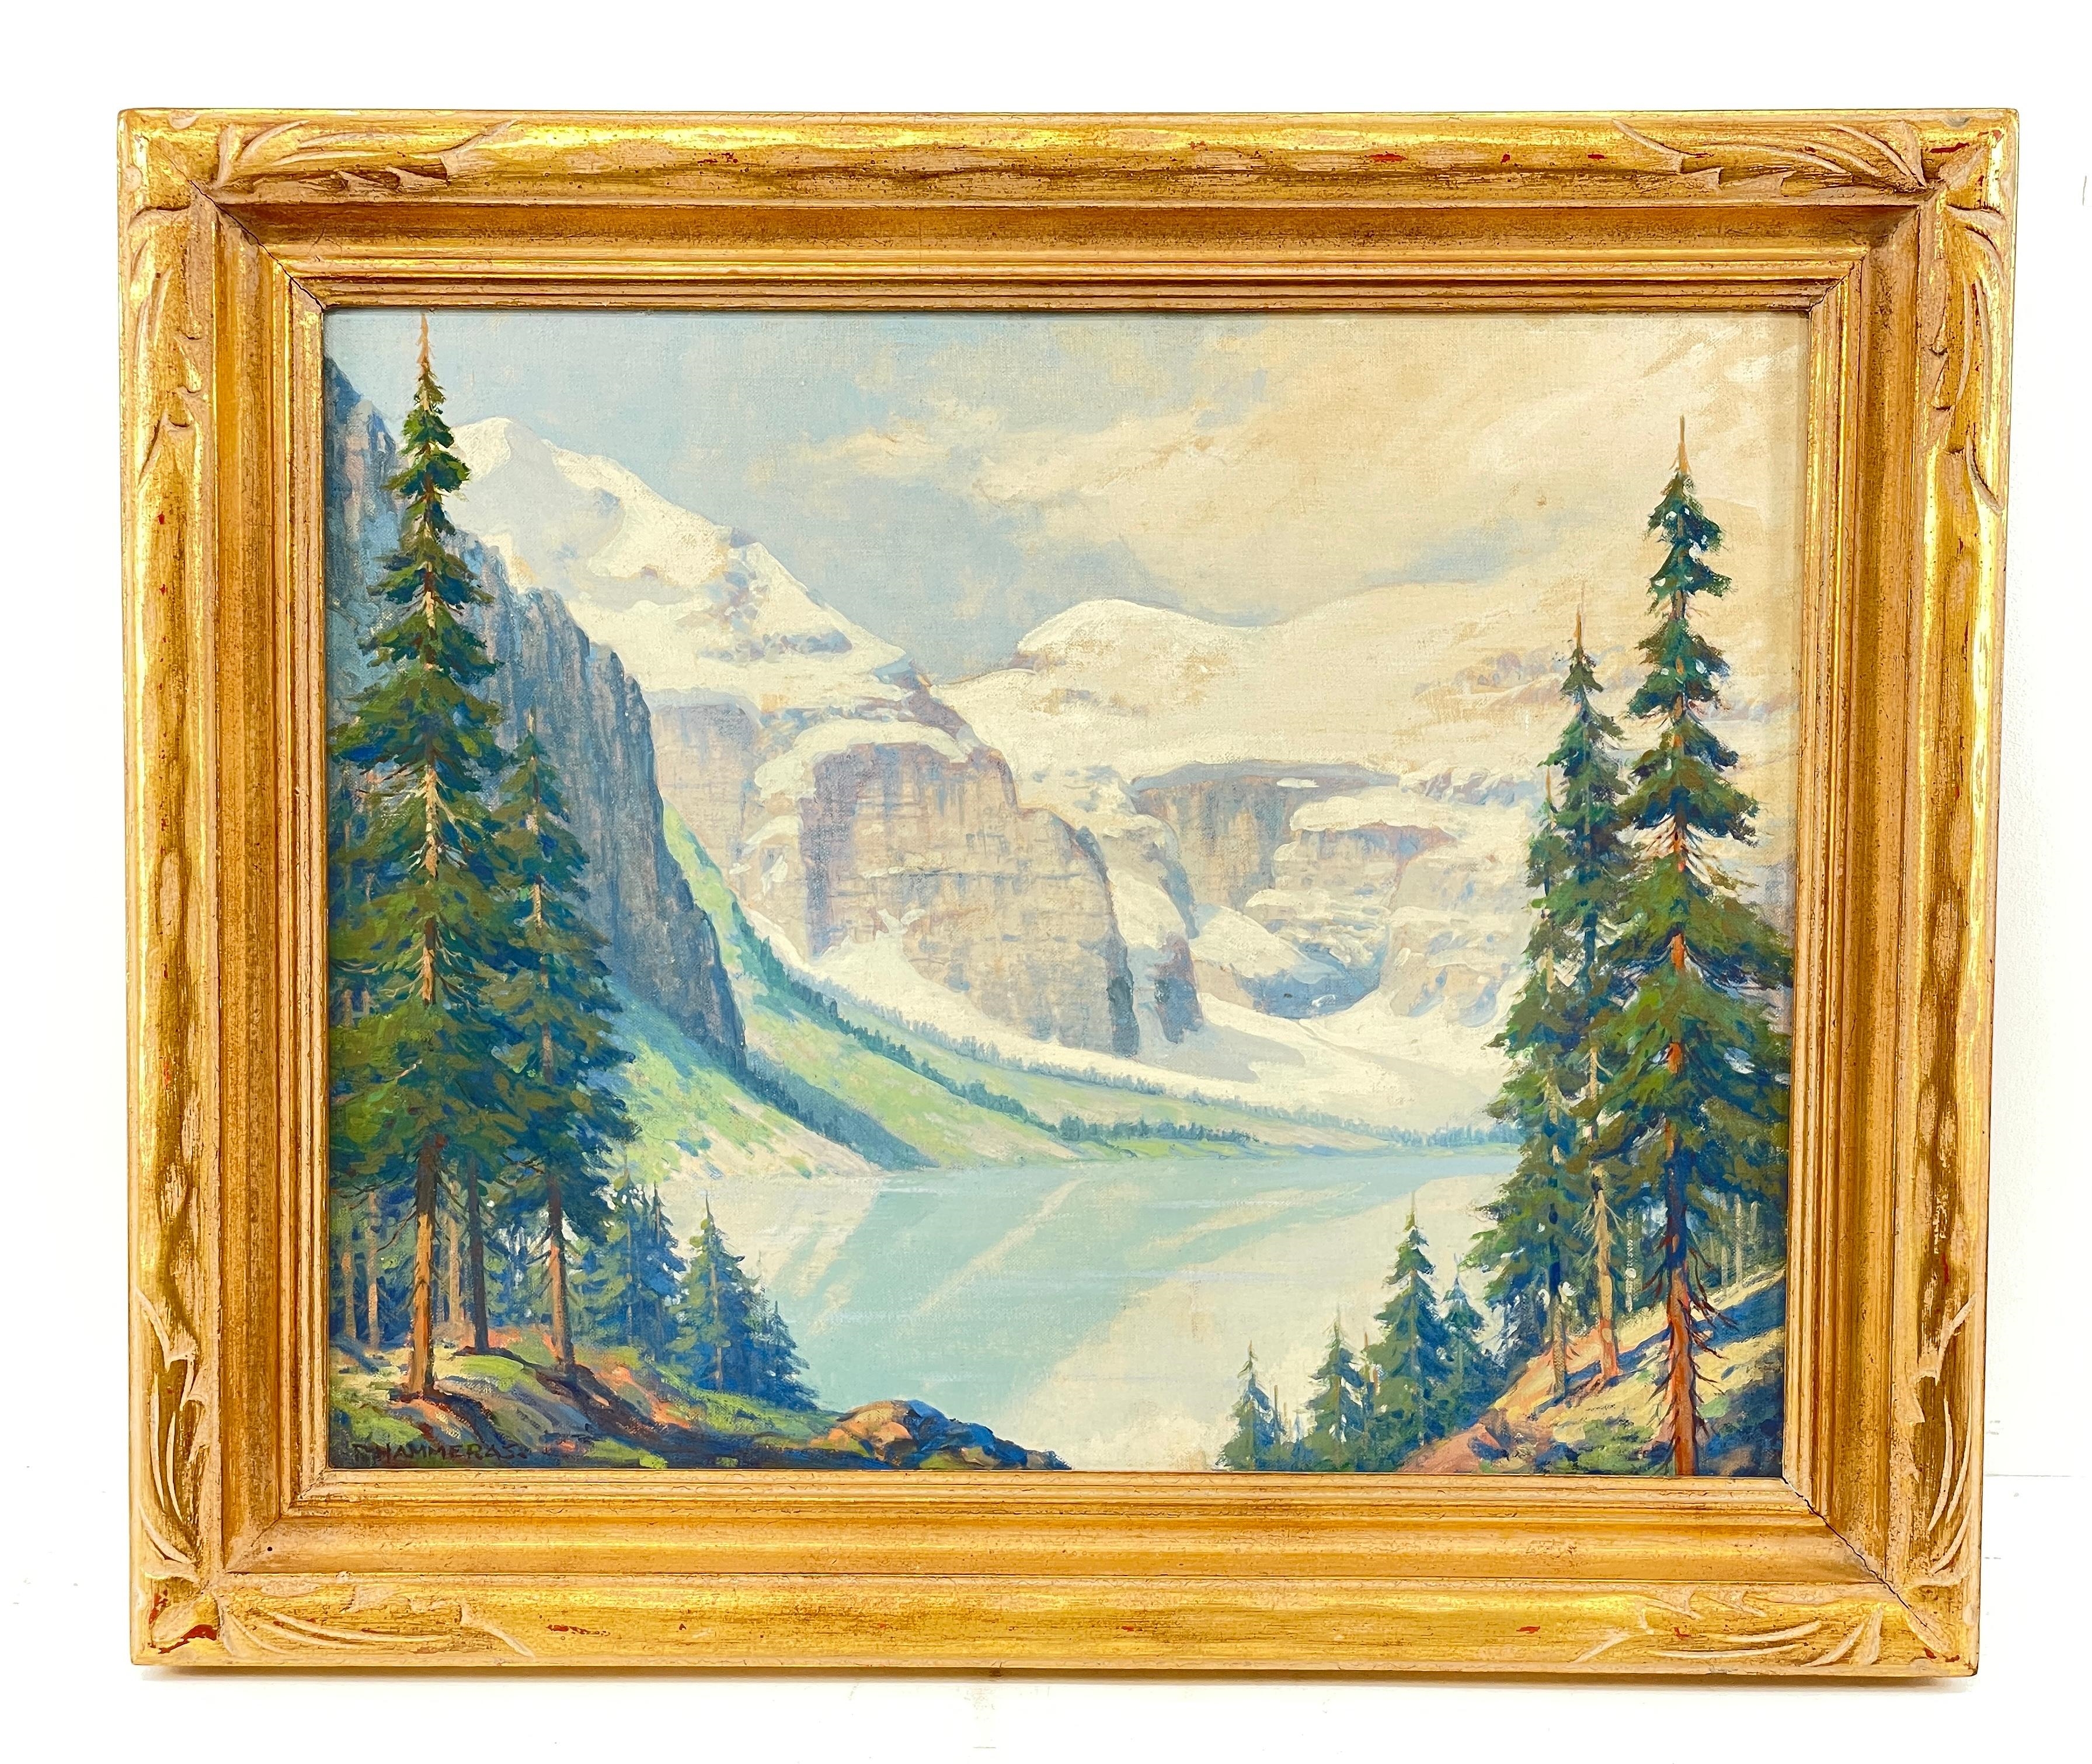 Ralph Hammeras (1894 - 1970) "High Sierras" Oil on Board by Ralph Hammeras